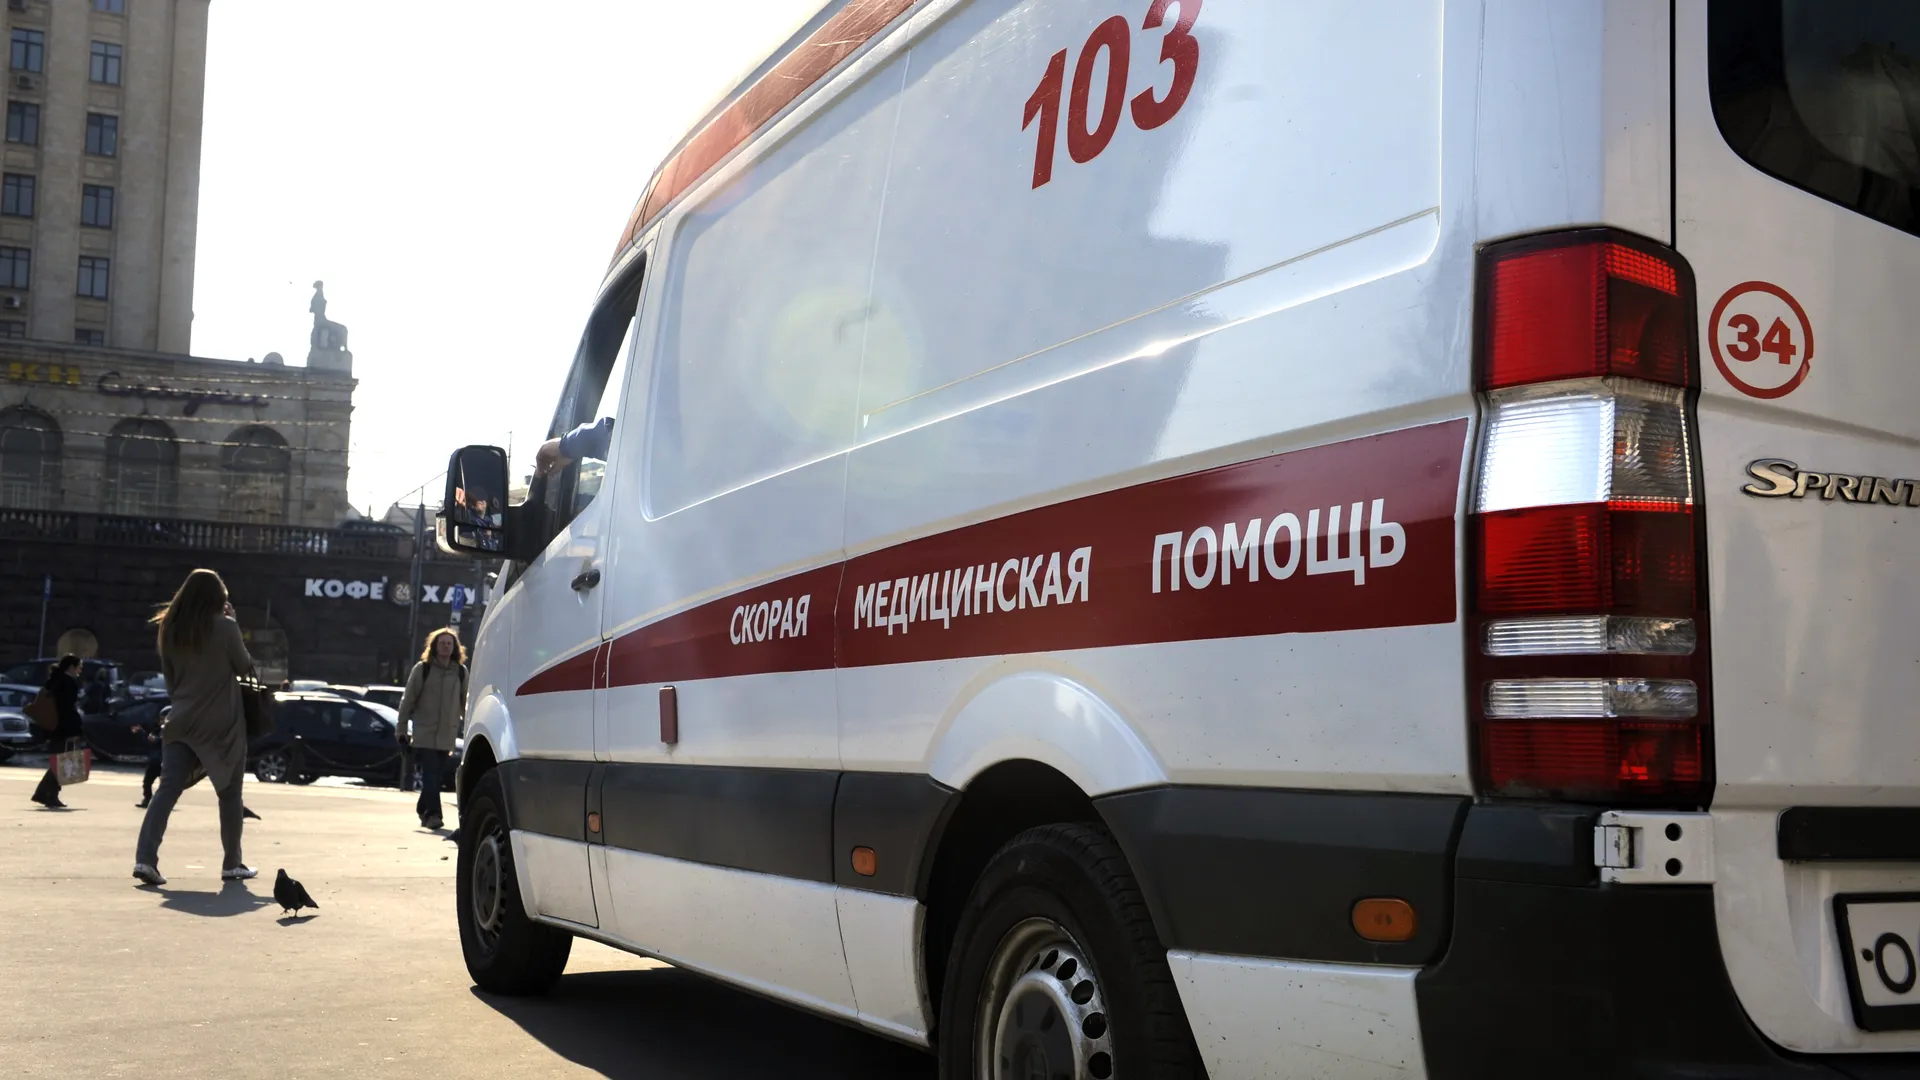 Подростка-зацепера ударило током в пенис на крыше вагона в Подмосковье